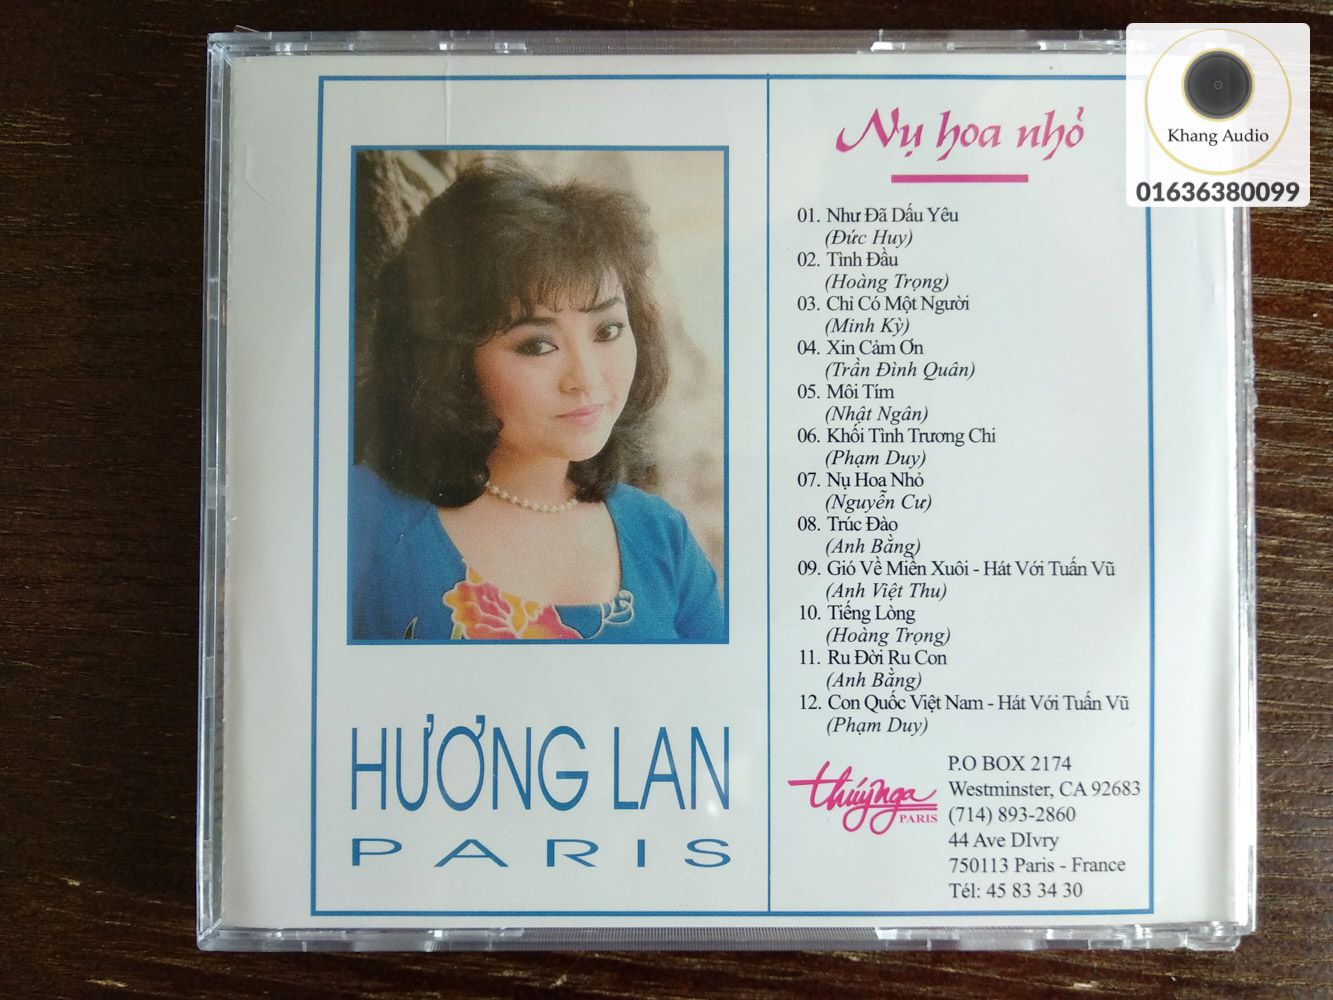 Nụ Hoa Nhỏ - Hương Lan Khang Audio 0336380099